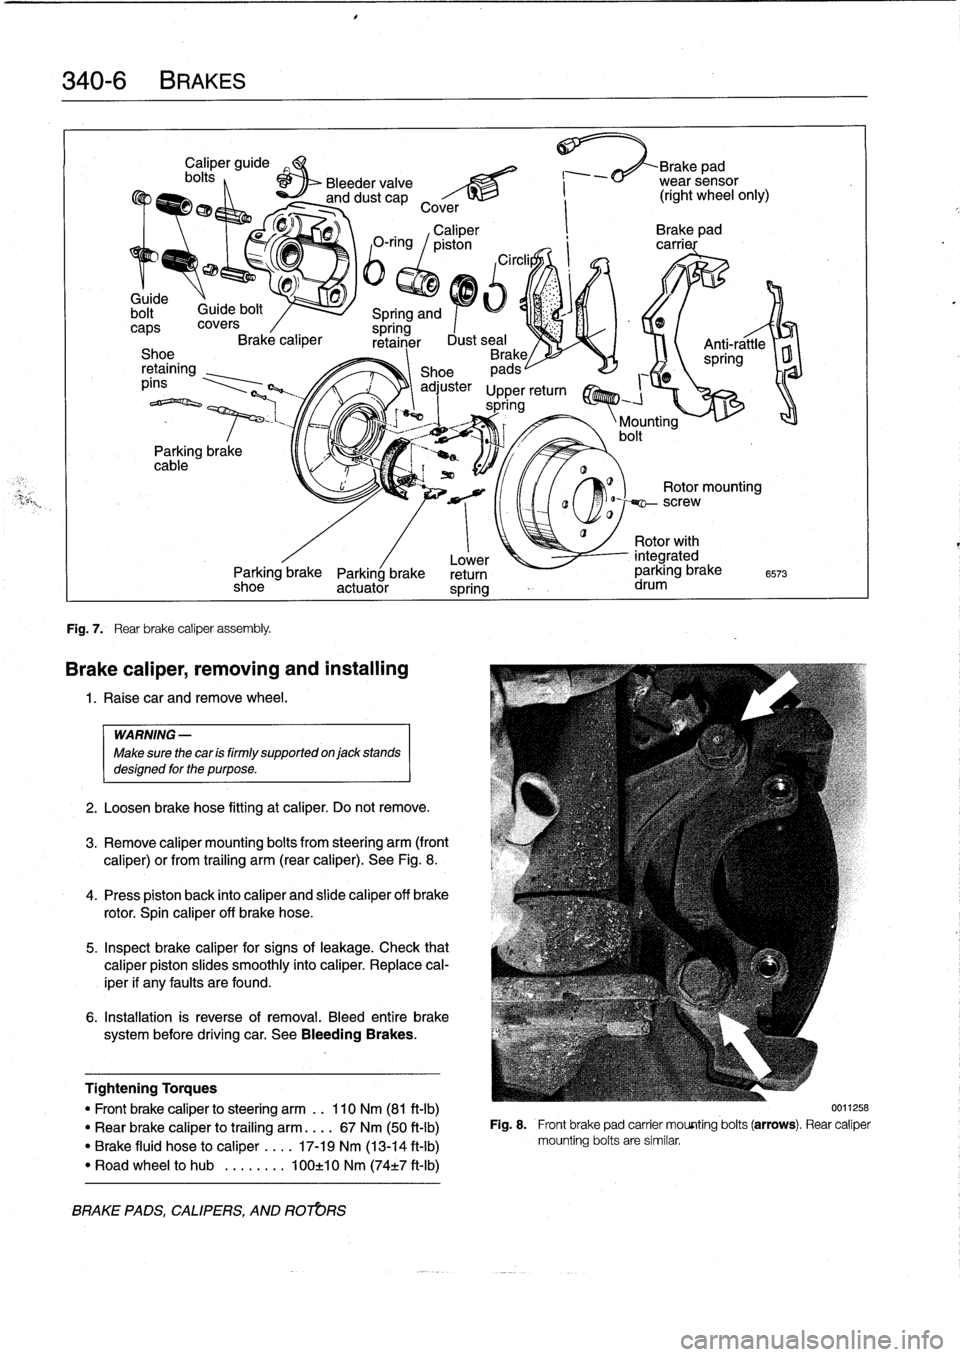 BMW 318i 1994 E36 User Guide 
340-
6BRAKES

bolt~

	

Guide
bolt

caps
covers
Brake
caliper
Shoe
retaining
píns

Parking
brake
cable

Fig
.
7
.

	

Rear
brake
caliper
assembly
.

Caliper
guide

	

Brake

	

ad
bolts
,

	

Bleede